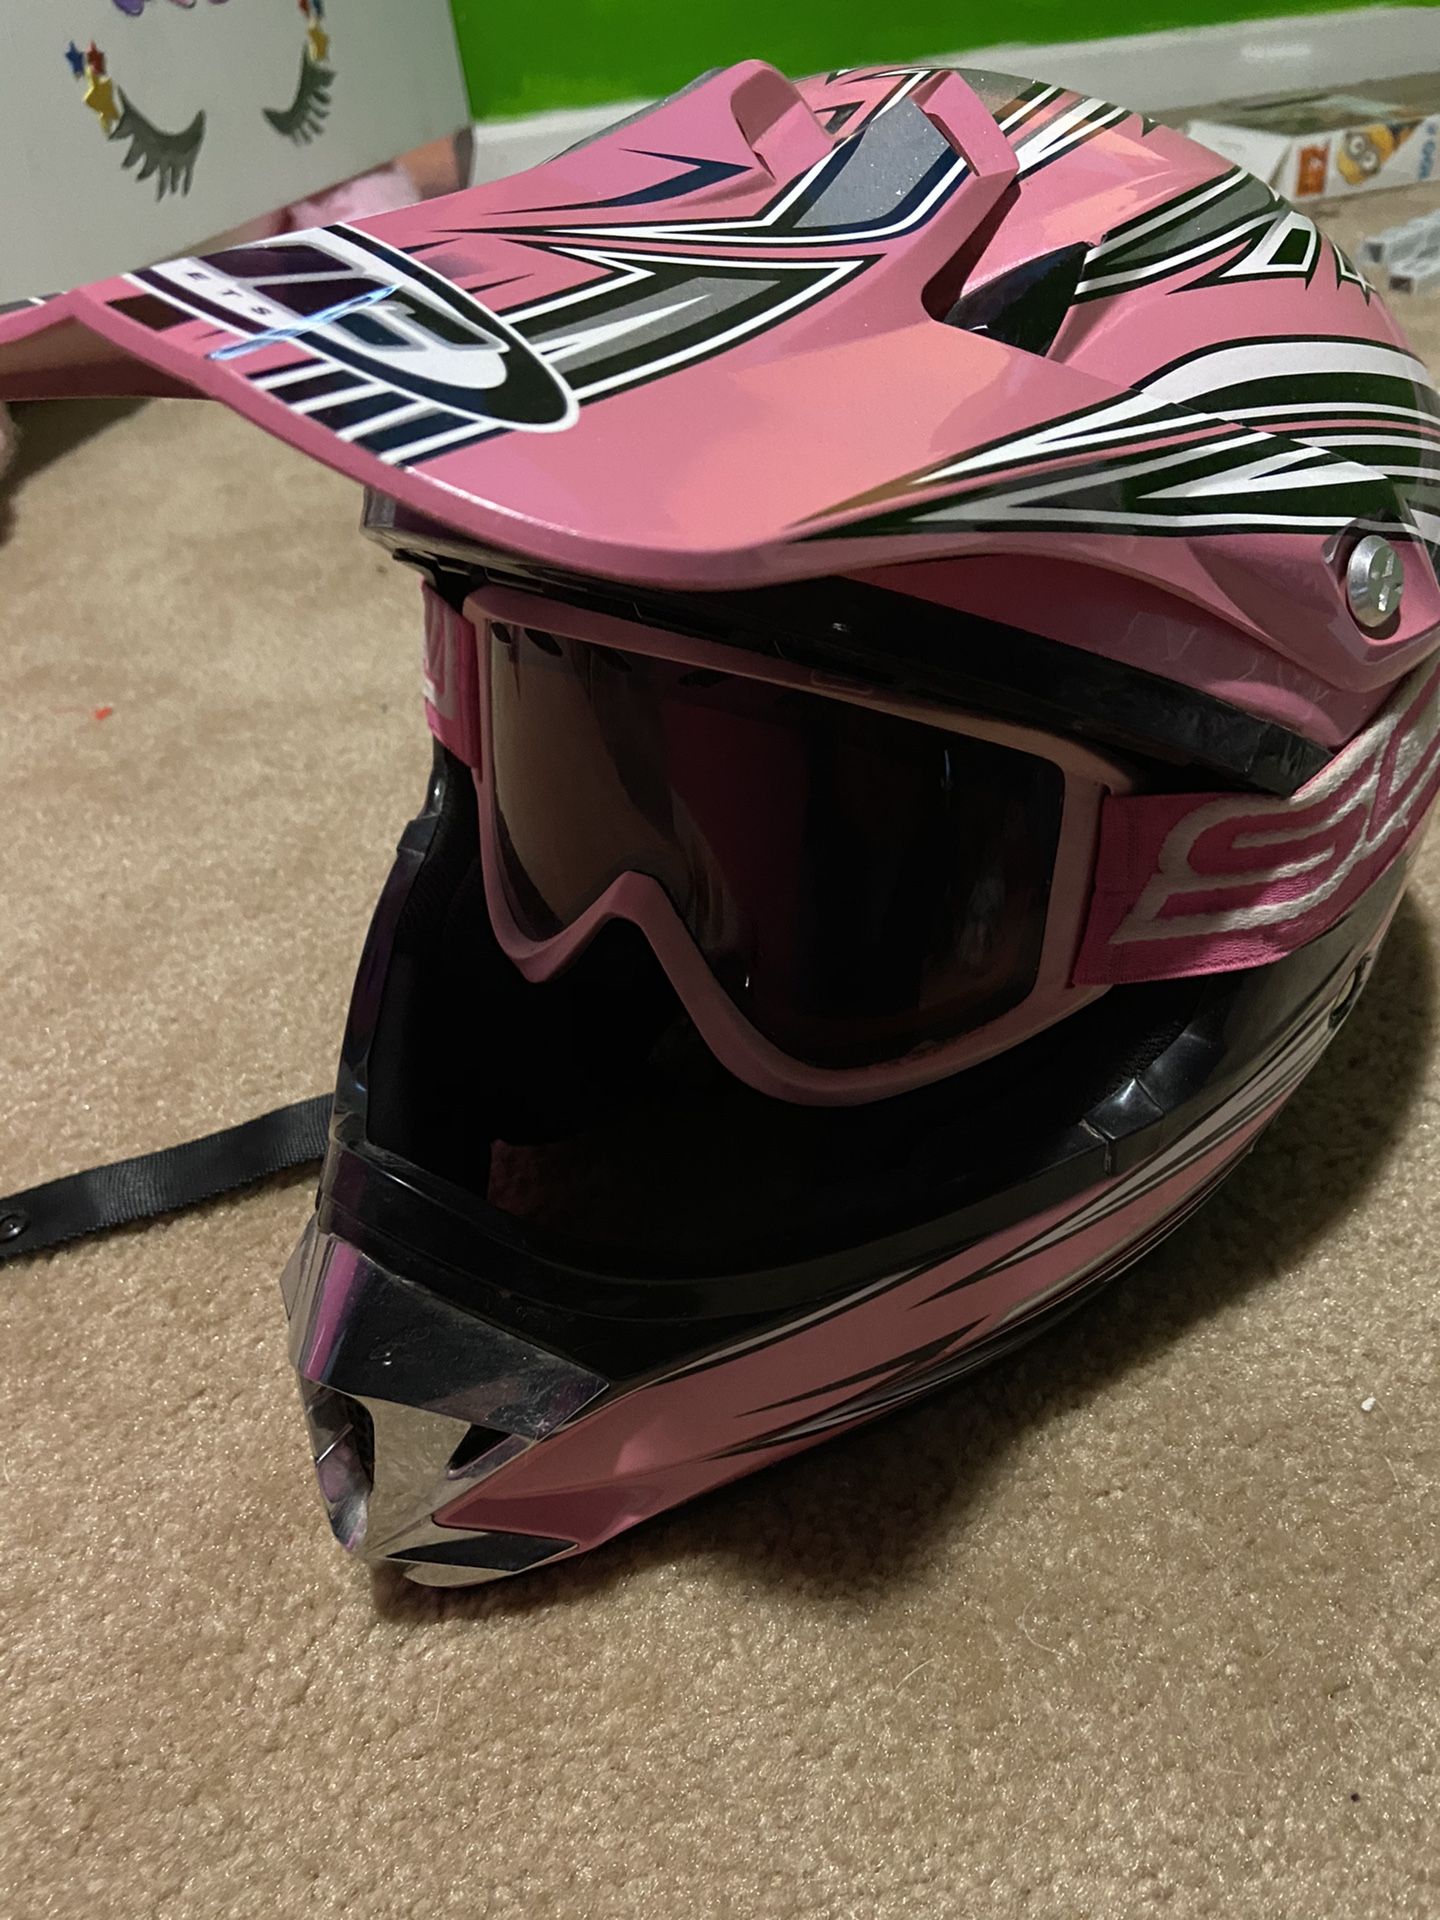 HJC Women’s Dirt Bike/Quad helmet